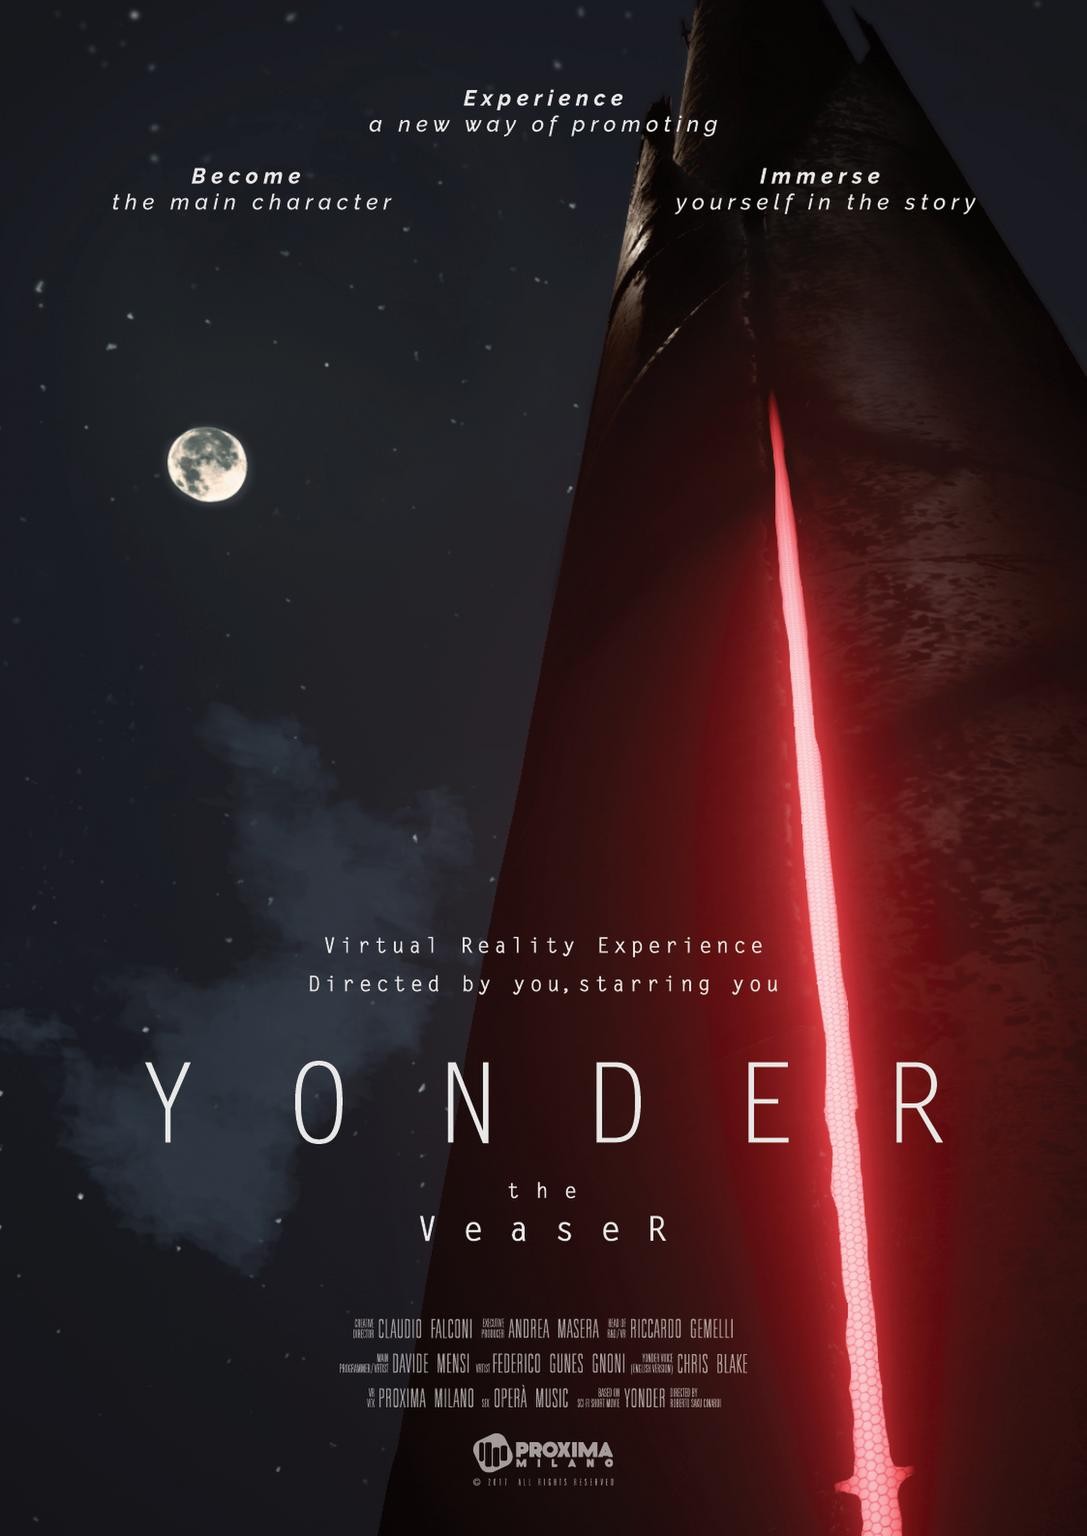 YONDER | THE VEASER